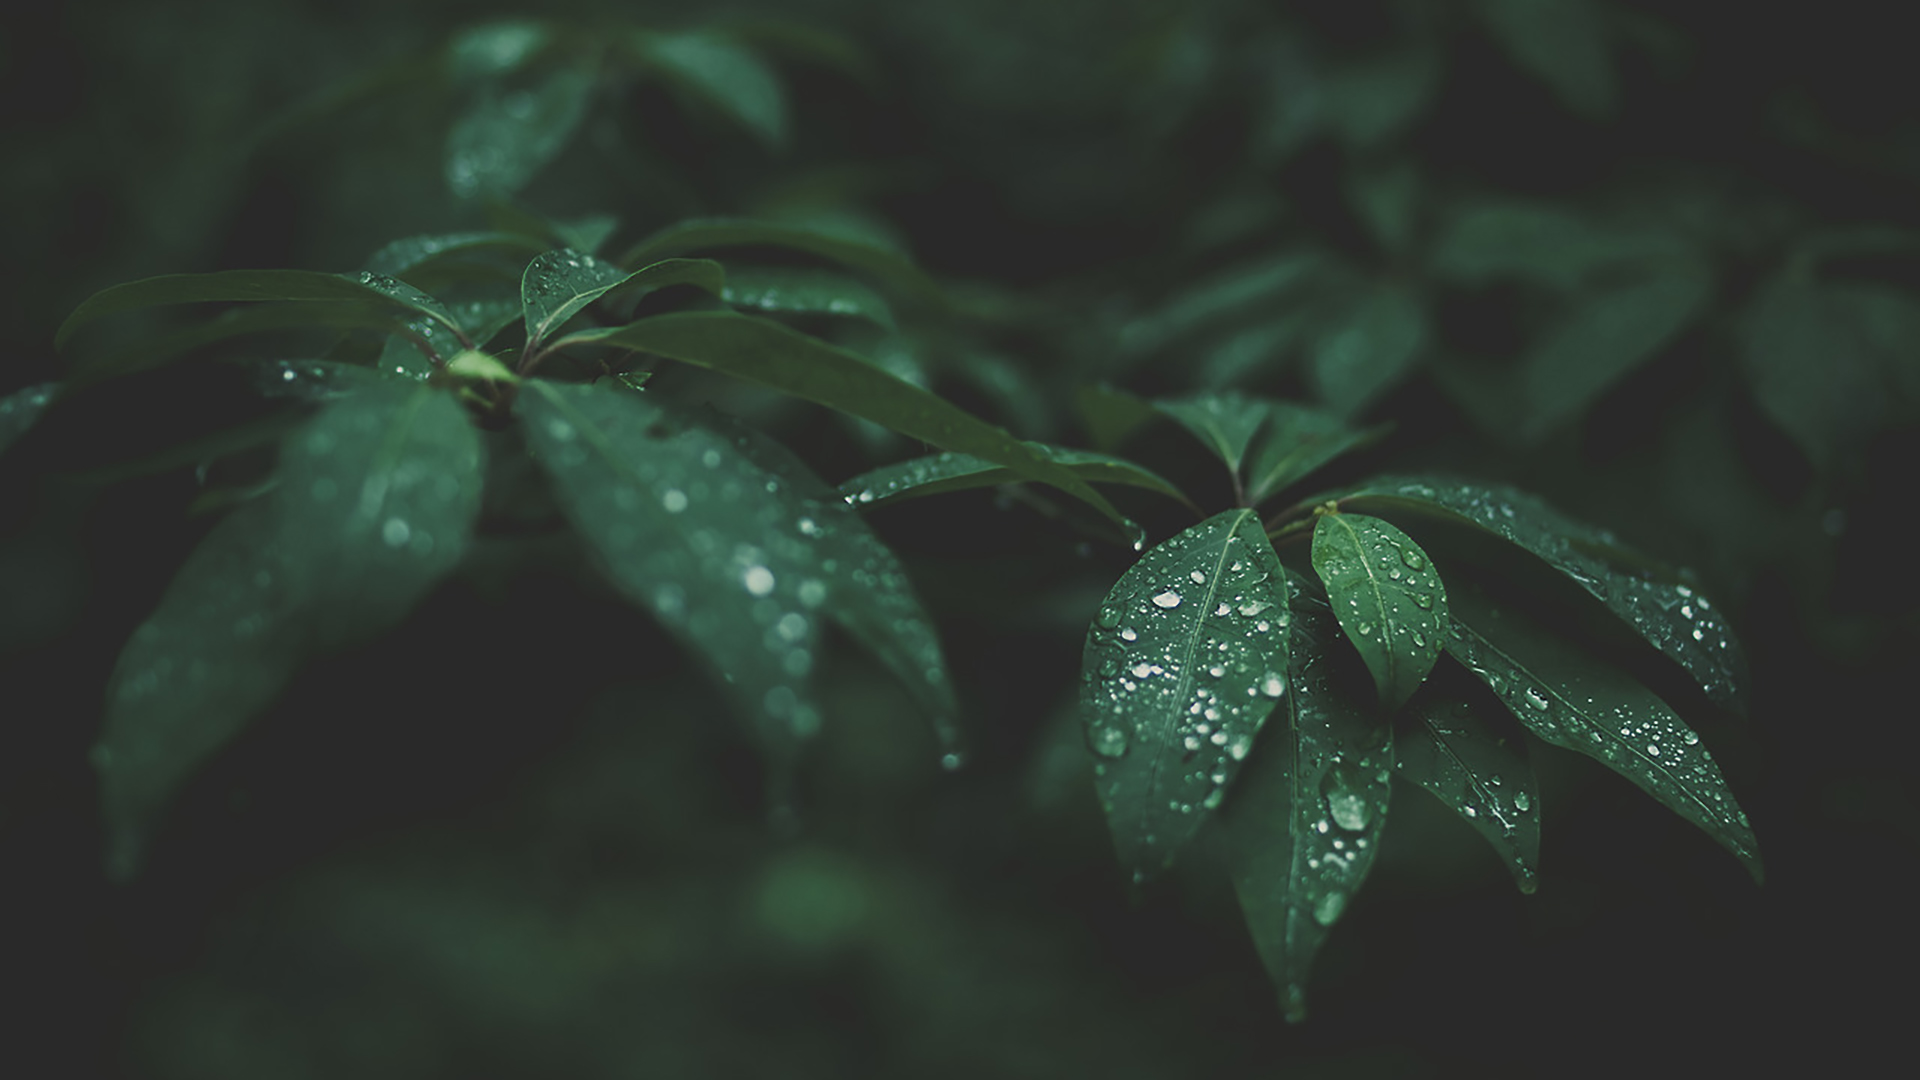 Water Drops on Green Leaves Wallpaper | HD Wallpaper ...
